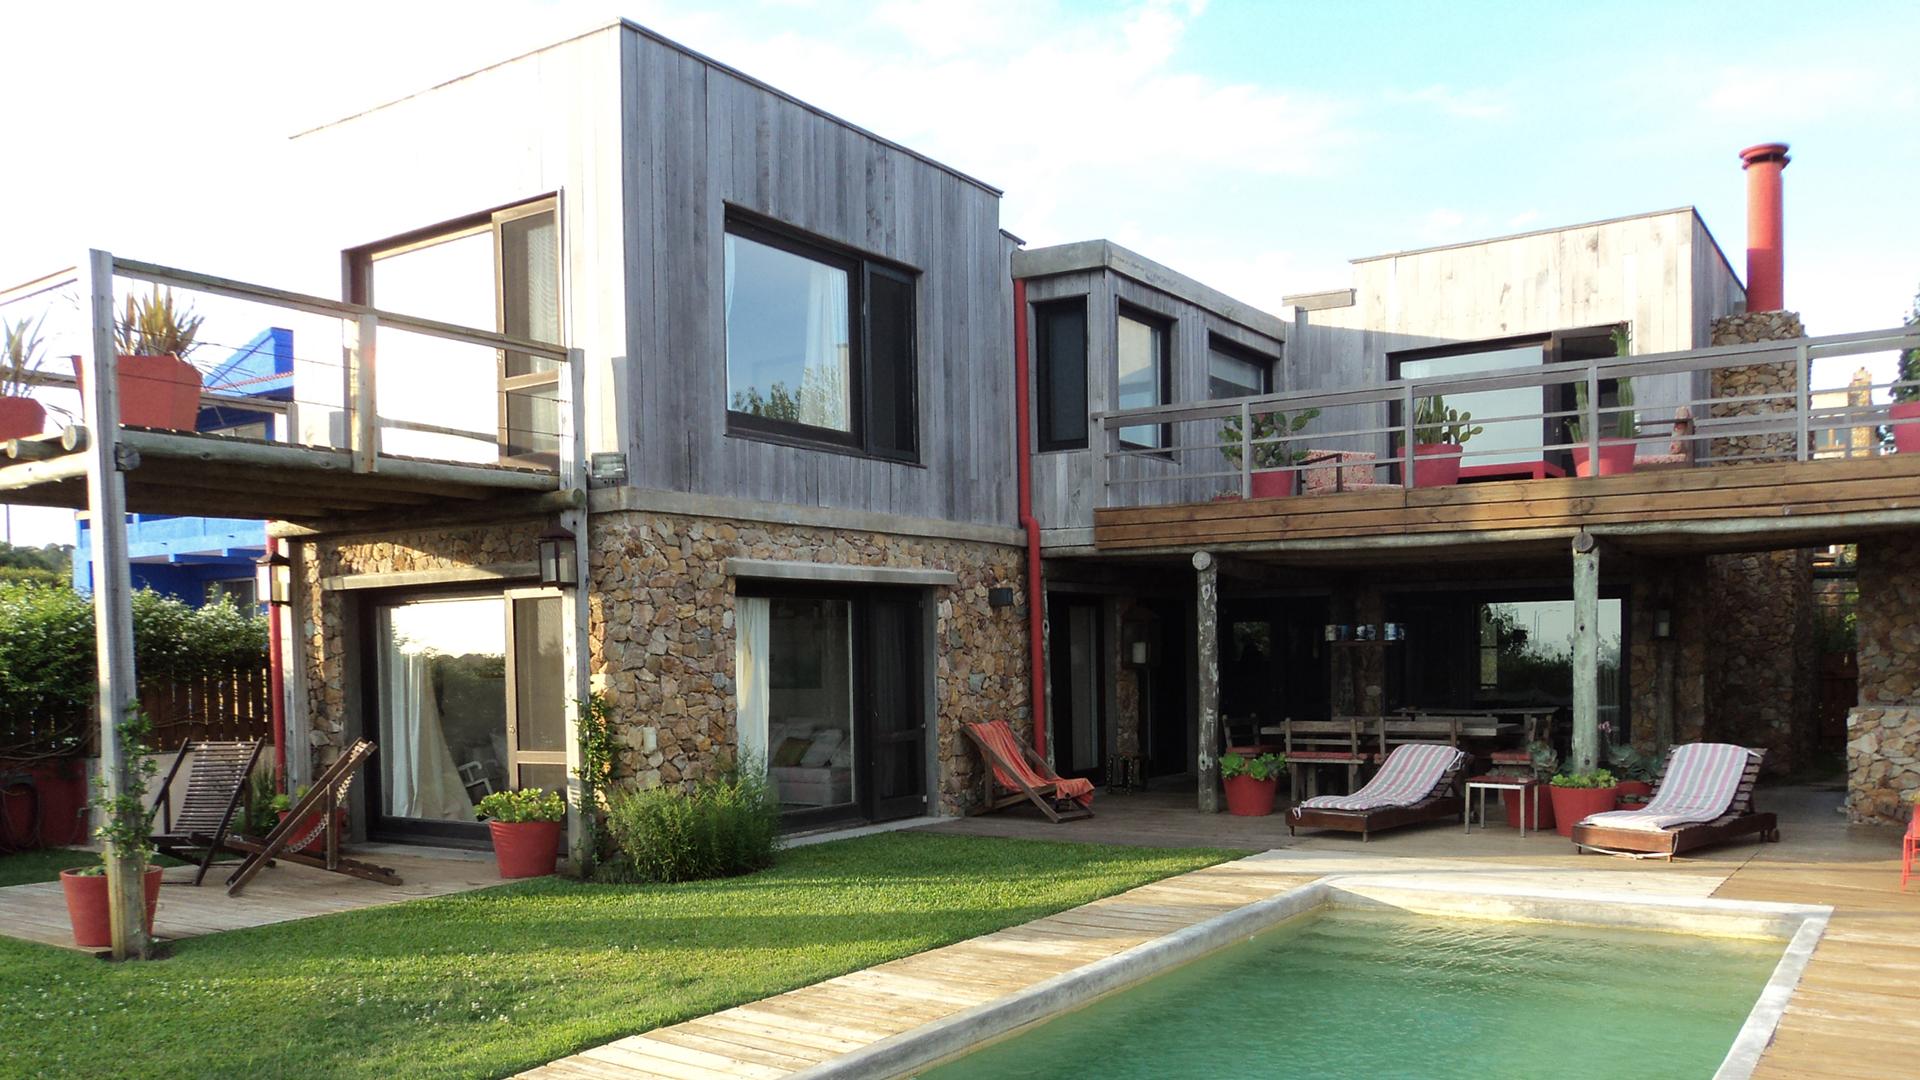 Cozy Oceanview House  located in El Chorro, Punta del Este, Uruguay, listed by Curiocity Villas.